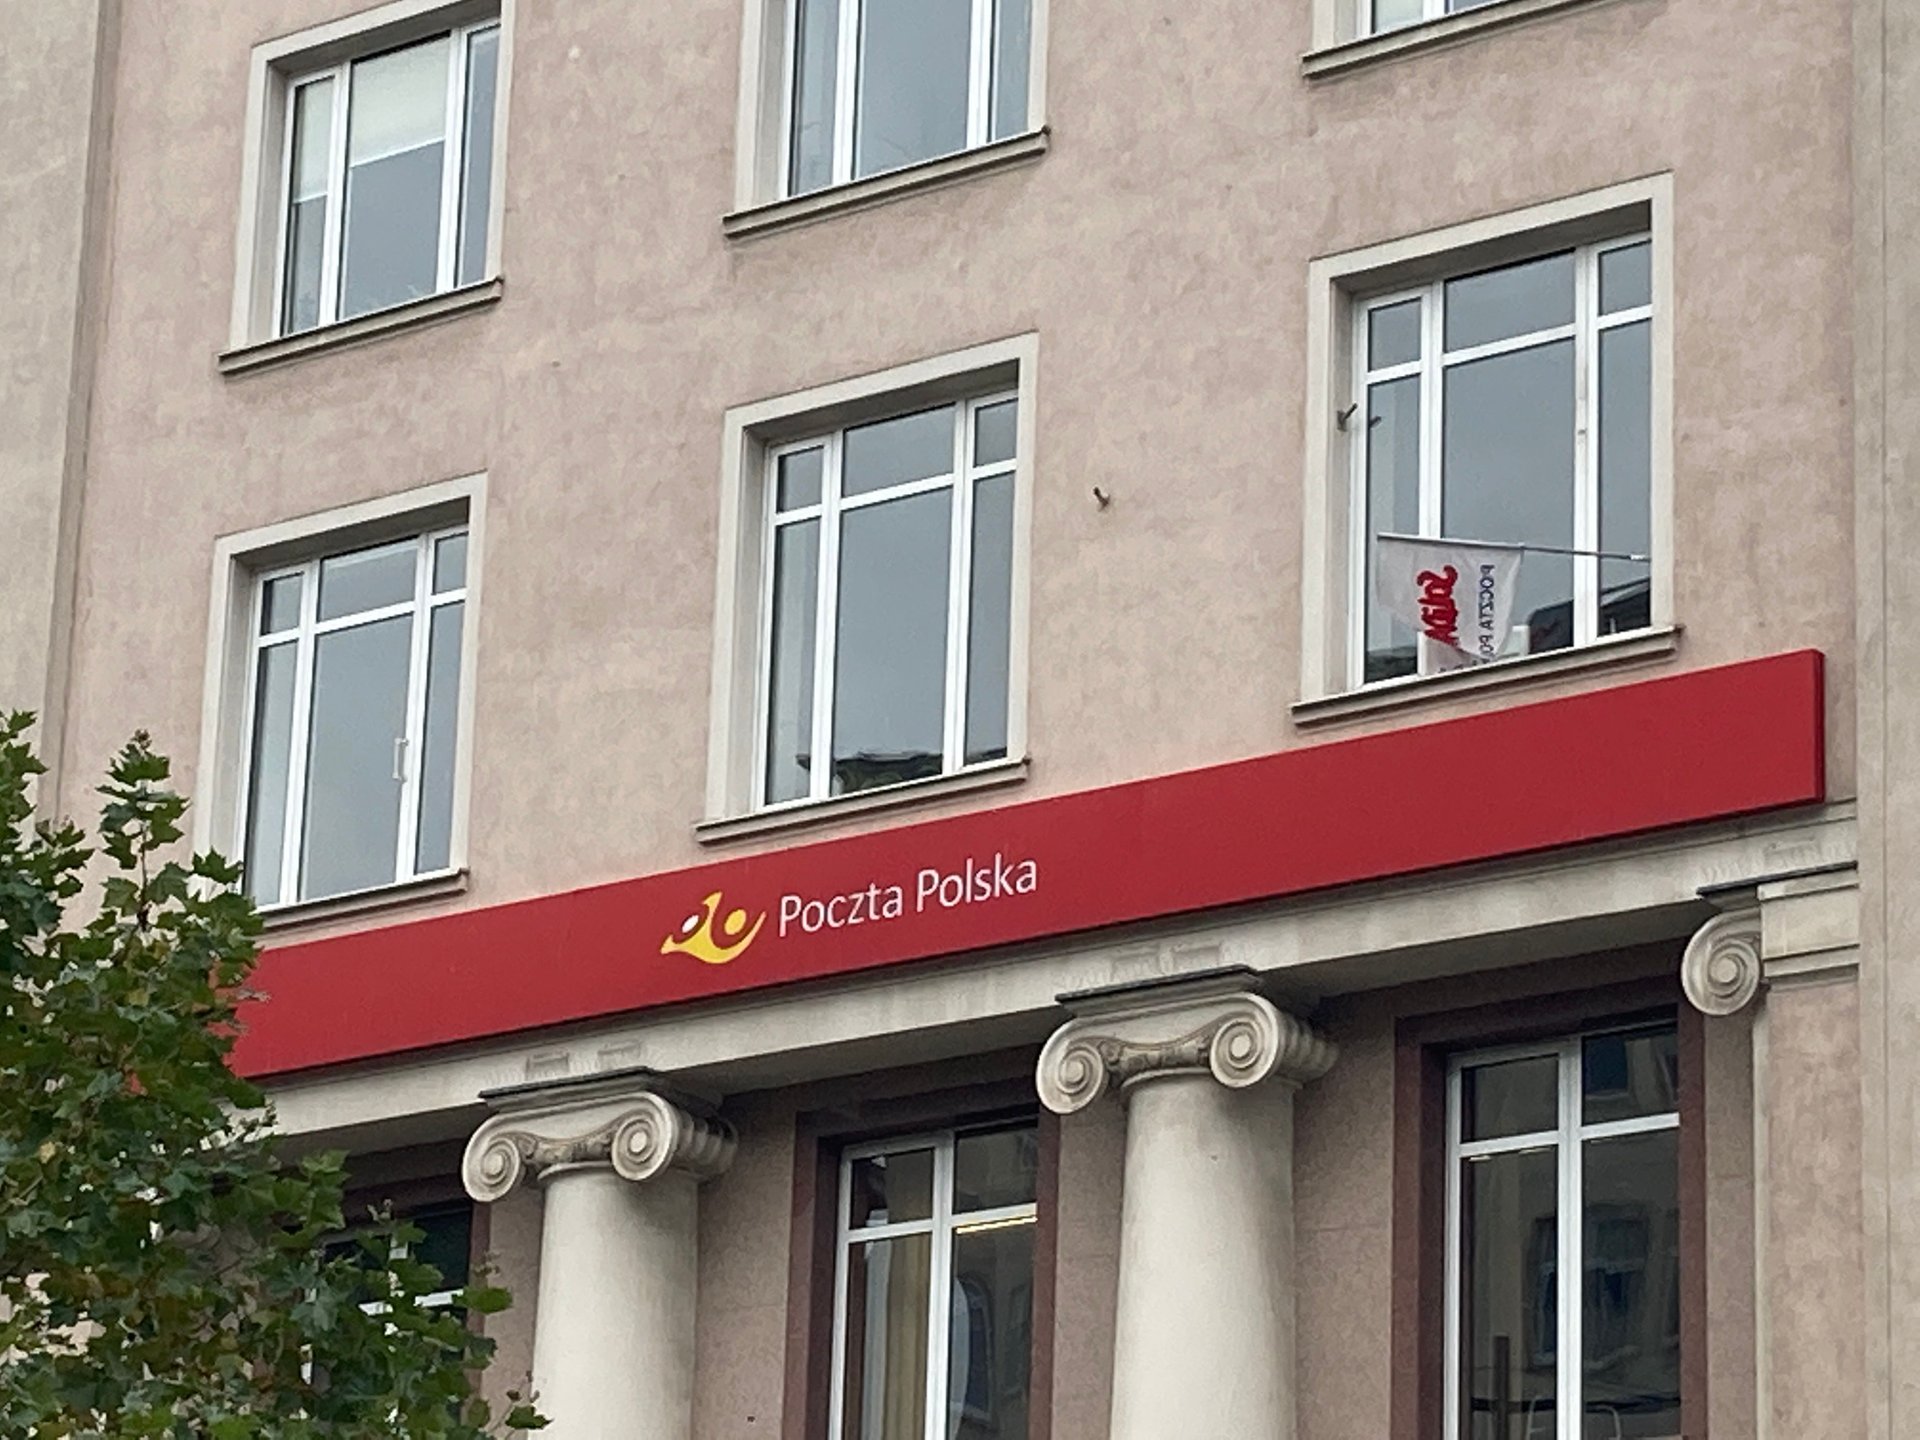 poczta polska-logo-budynek-uslugi